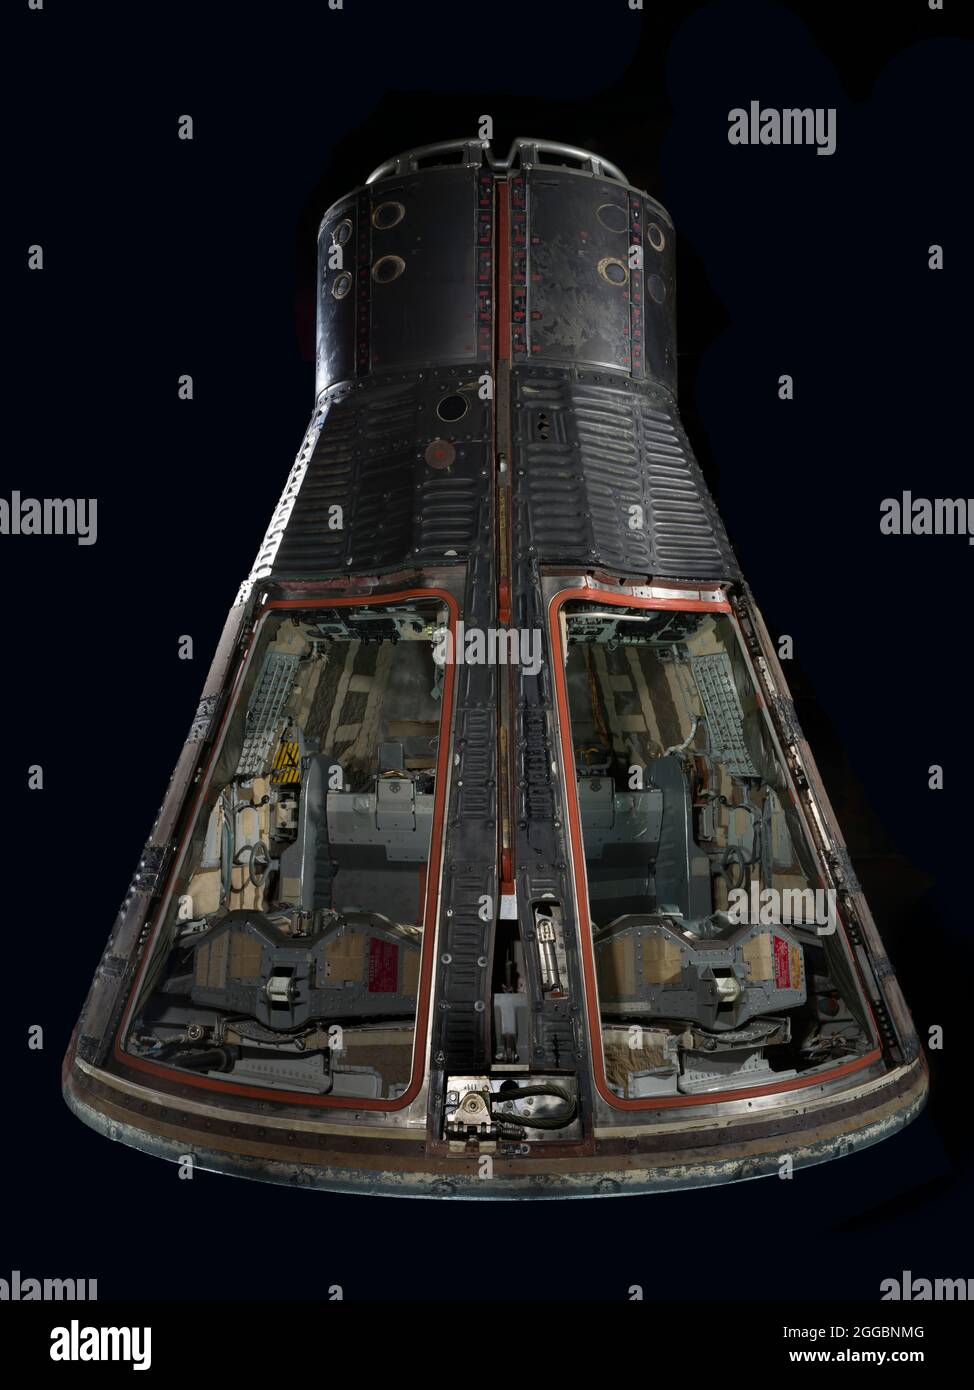 Les astronautes Frank Borman et James Lovell ont été mis en orbite à bord de cet engin spatial, Gemini VII, le 4 décembre 1965. Leur mission première était de montrer que les humains pouvaient vivre en apesanteur pendant 14 jours, un record qui se tirait jusqu'en 1970. Gemini VII a également servi de véhicule cible pour Gemini VI-A, piloté par Walter Schirra et Thomas Stafford, qui ont organisé le premier rendez-vous spatial au monde le 15 décembre. Ces deux réalisations ont été des étapes cruciales sur la voie de l'atterrissage d'Apollo Moon. Ce module est la seule partie de Gemini qui est retournée à la terre. Derrière l'écran thermique se trouvait un Banque D'Images